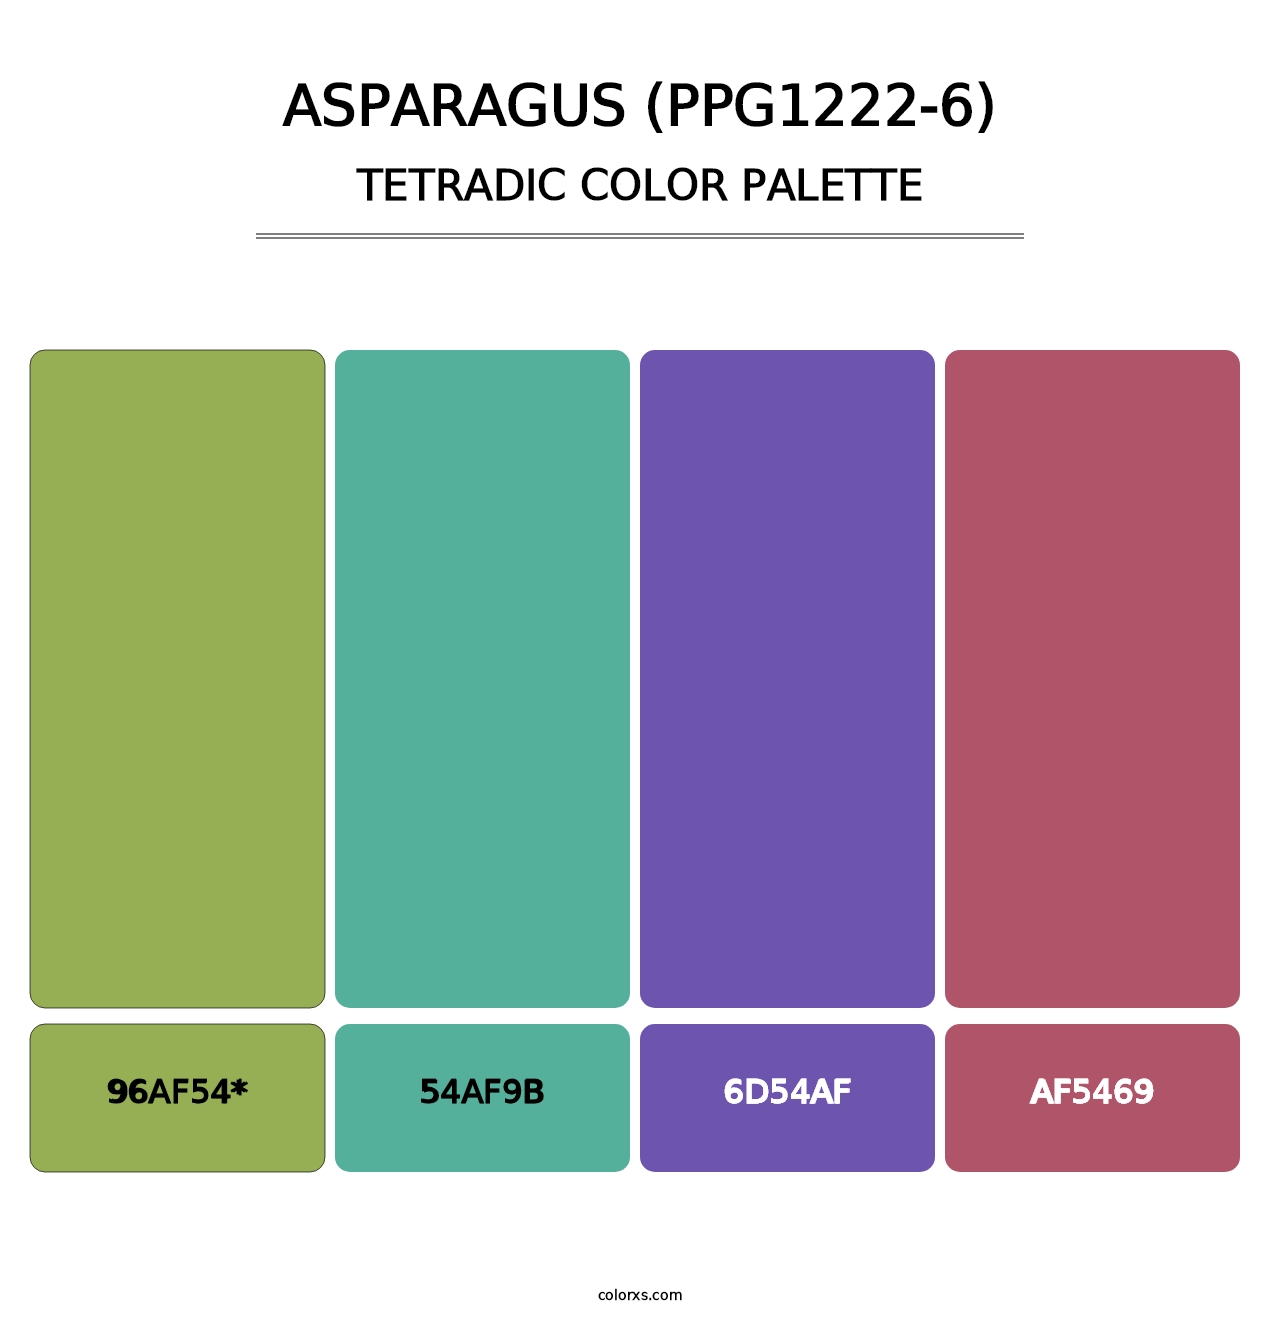 Asparagus (PPG1222-6) - Tetradic Color Palette